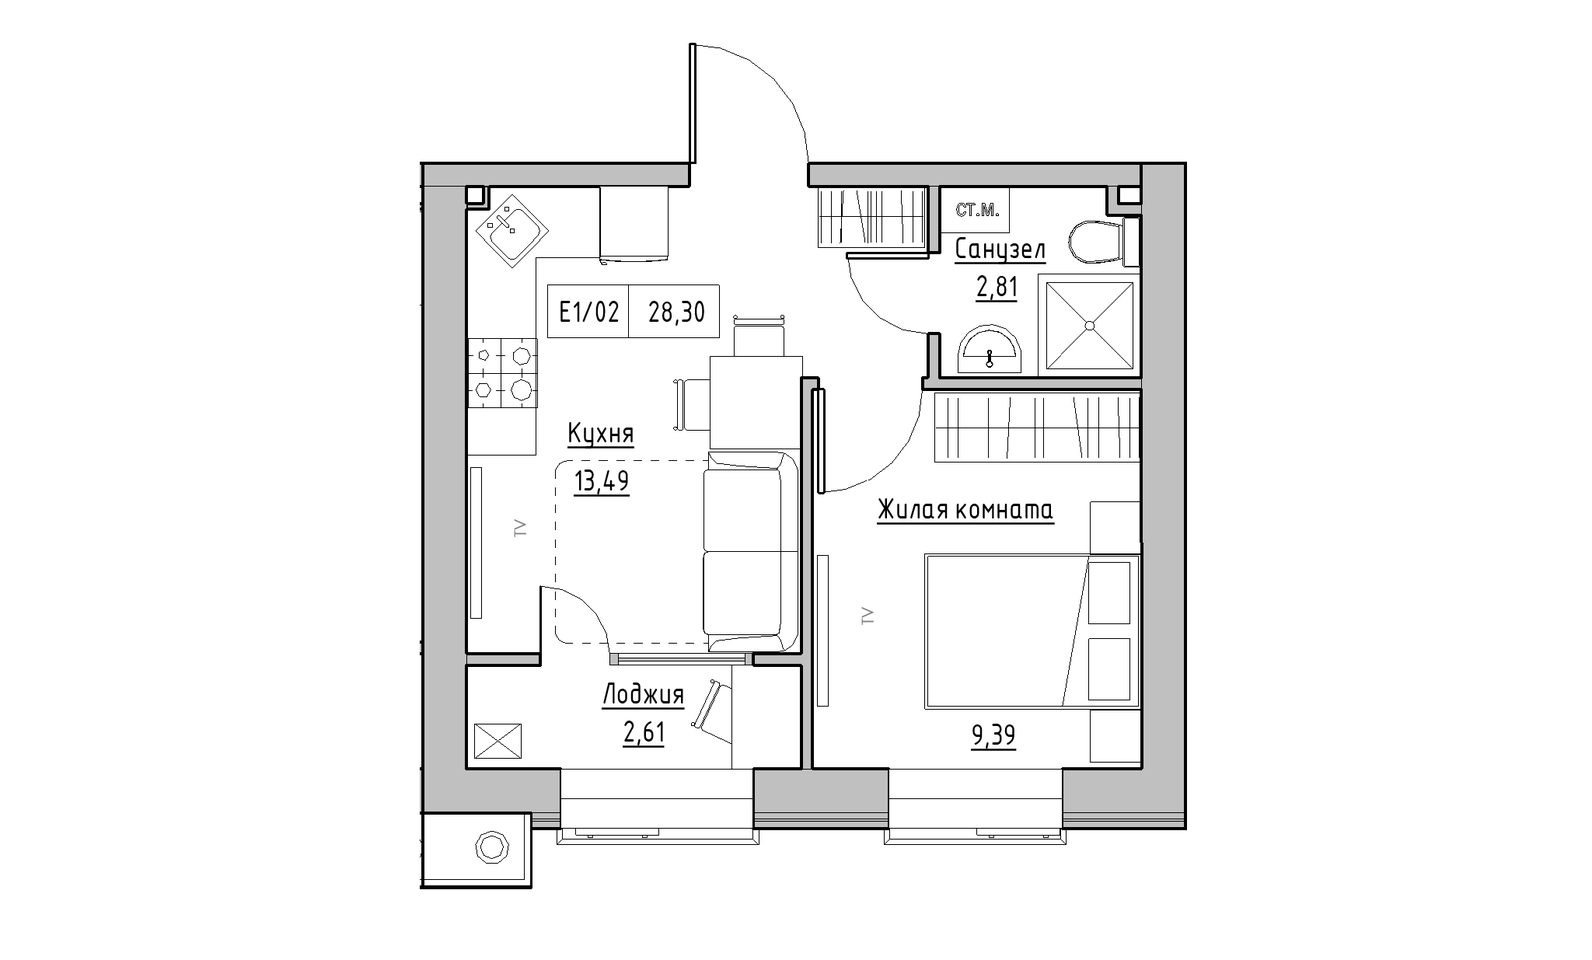 Планування 1-к квартира площею 28.3м2, KS-014-04/0001.